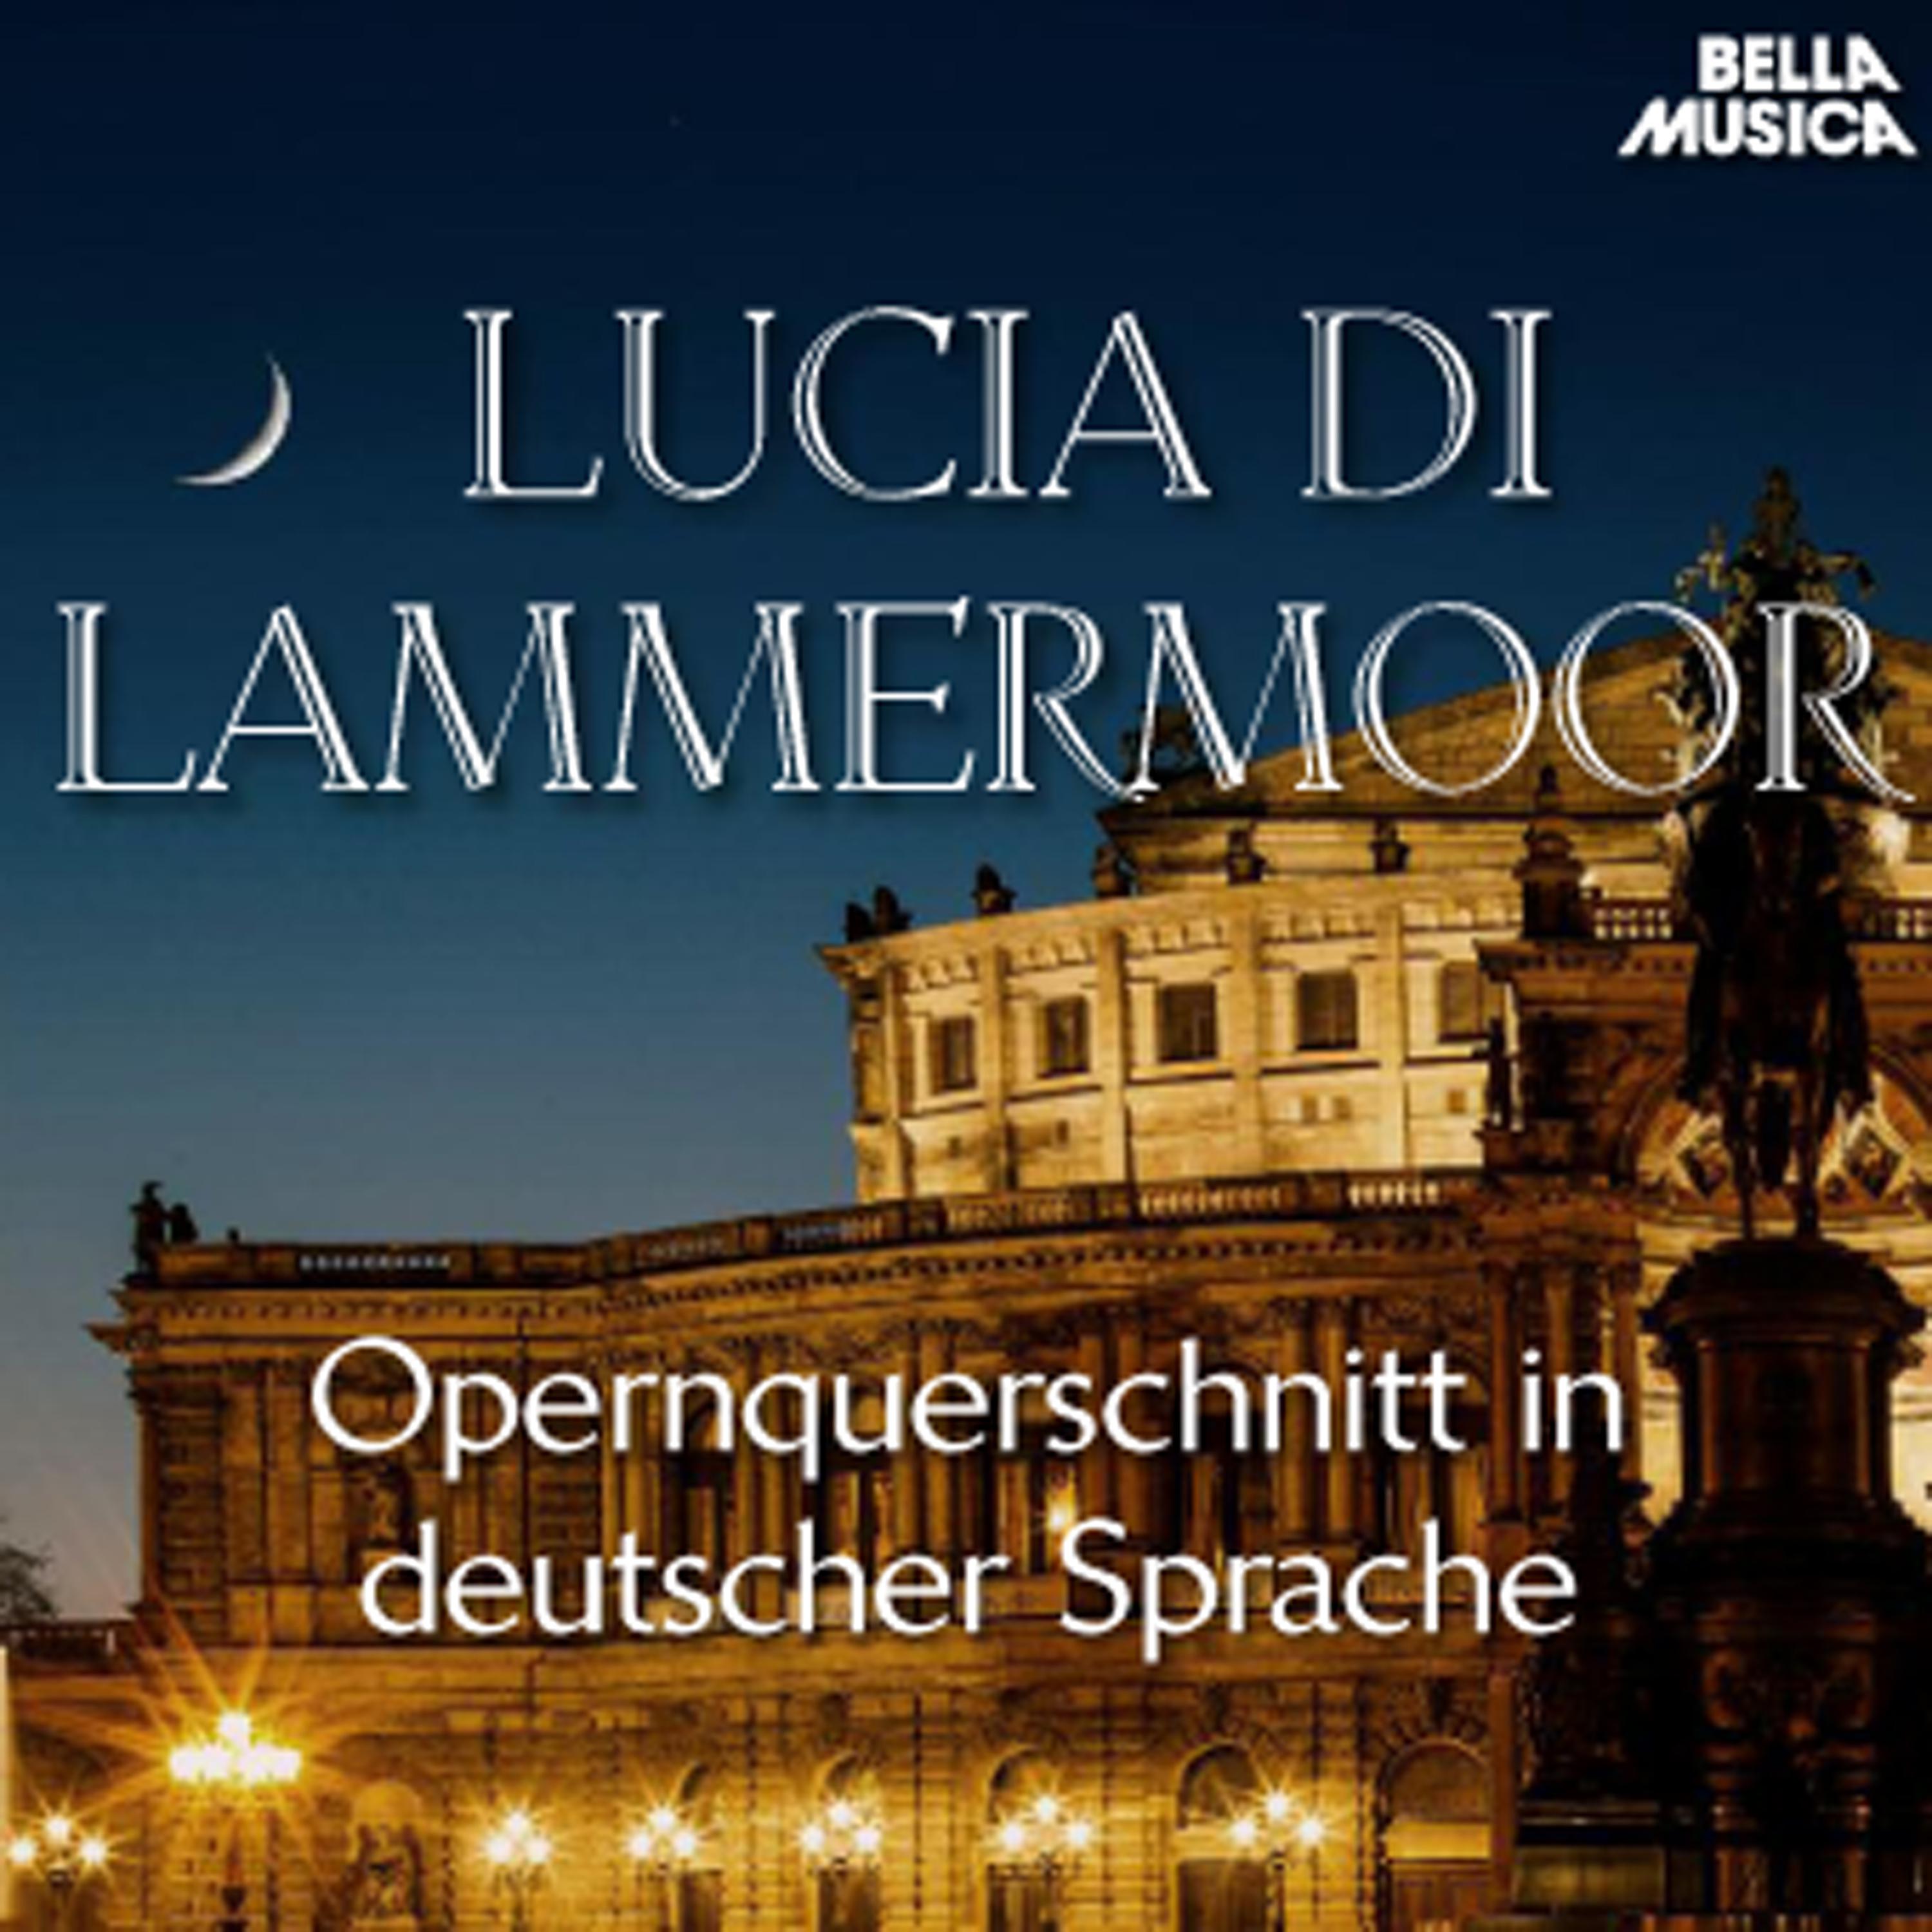 Lucia di Lammermoor: Auf, durchstreife die nahen Gestade